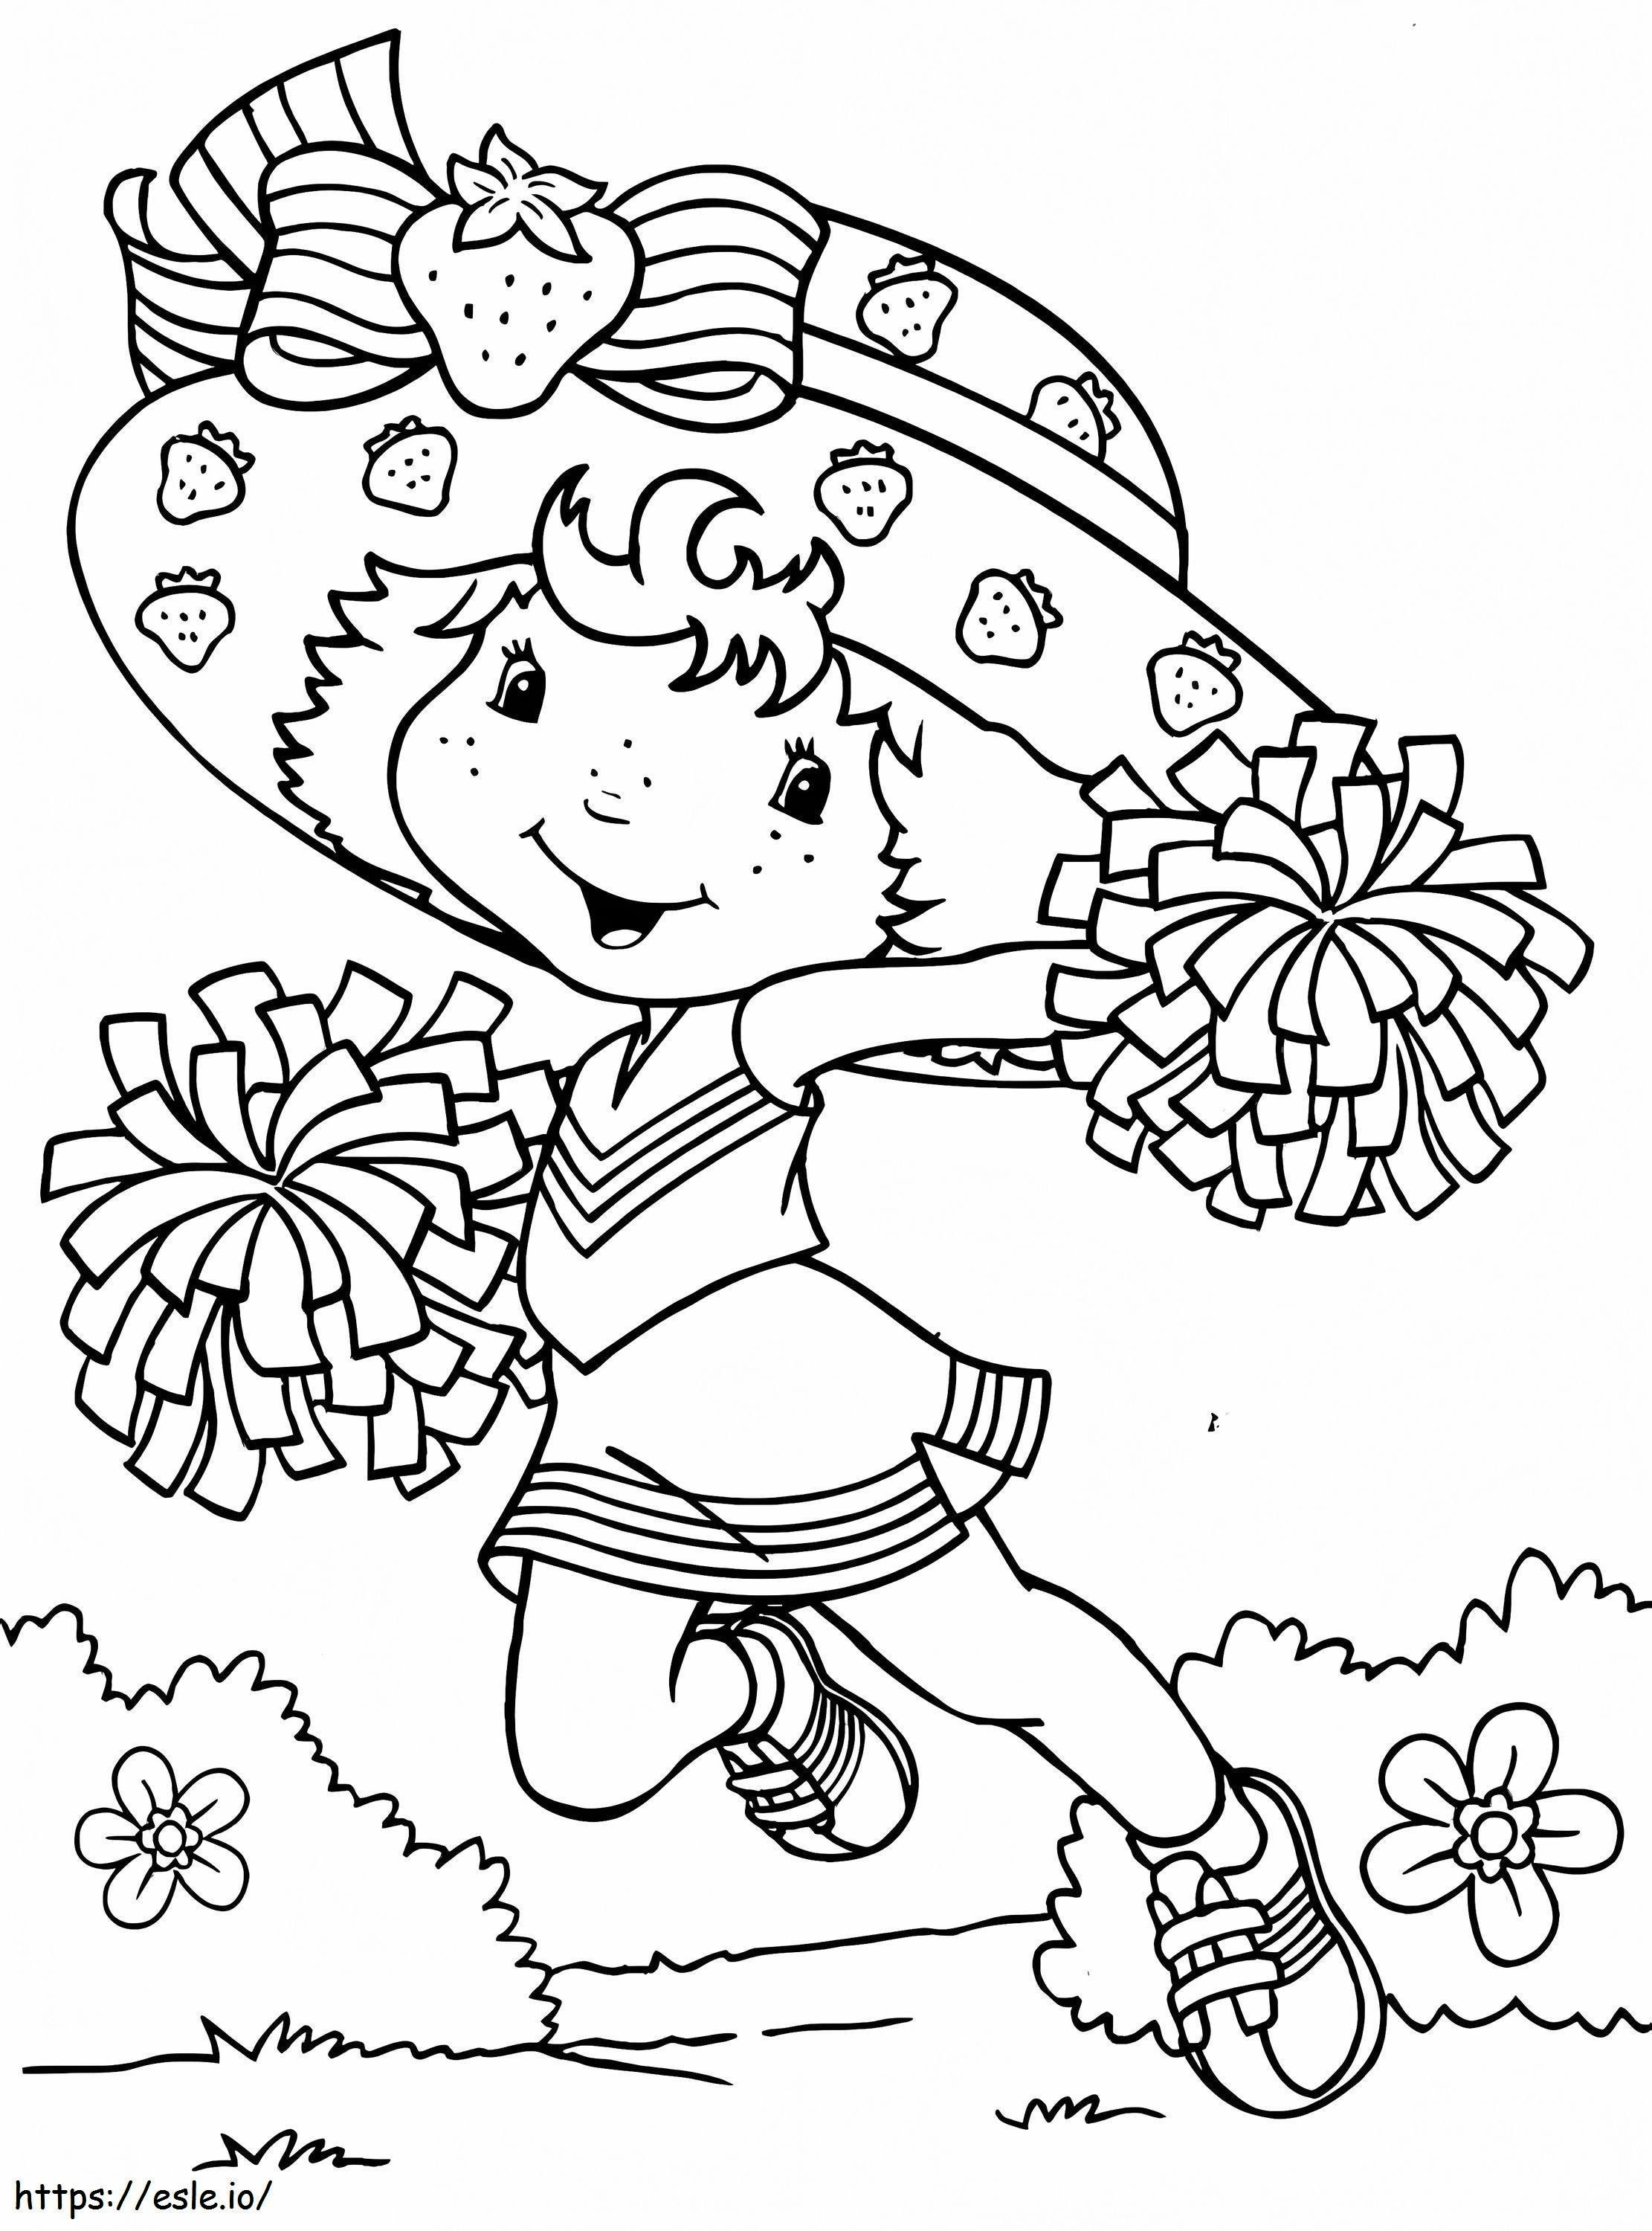 Cheerleaderka z Truskawkowym Ciastkiem kolorowanka